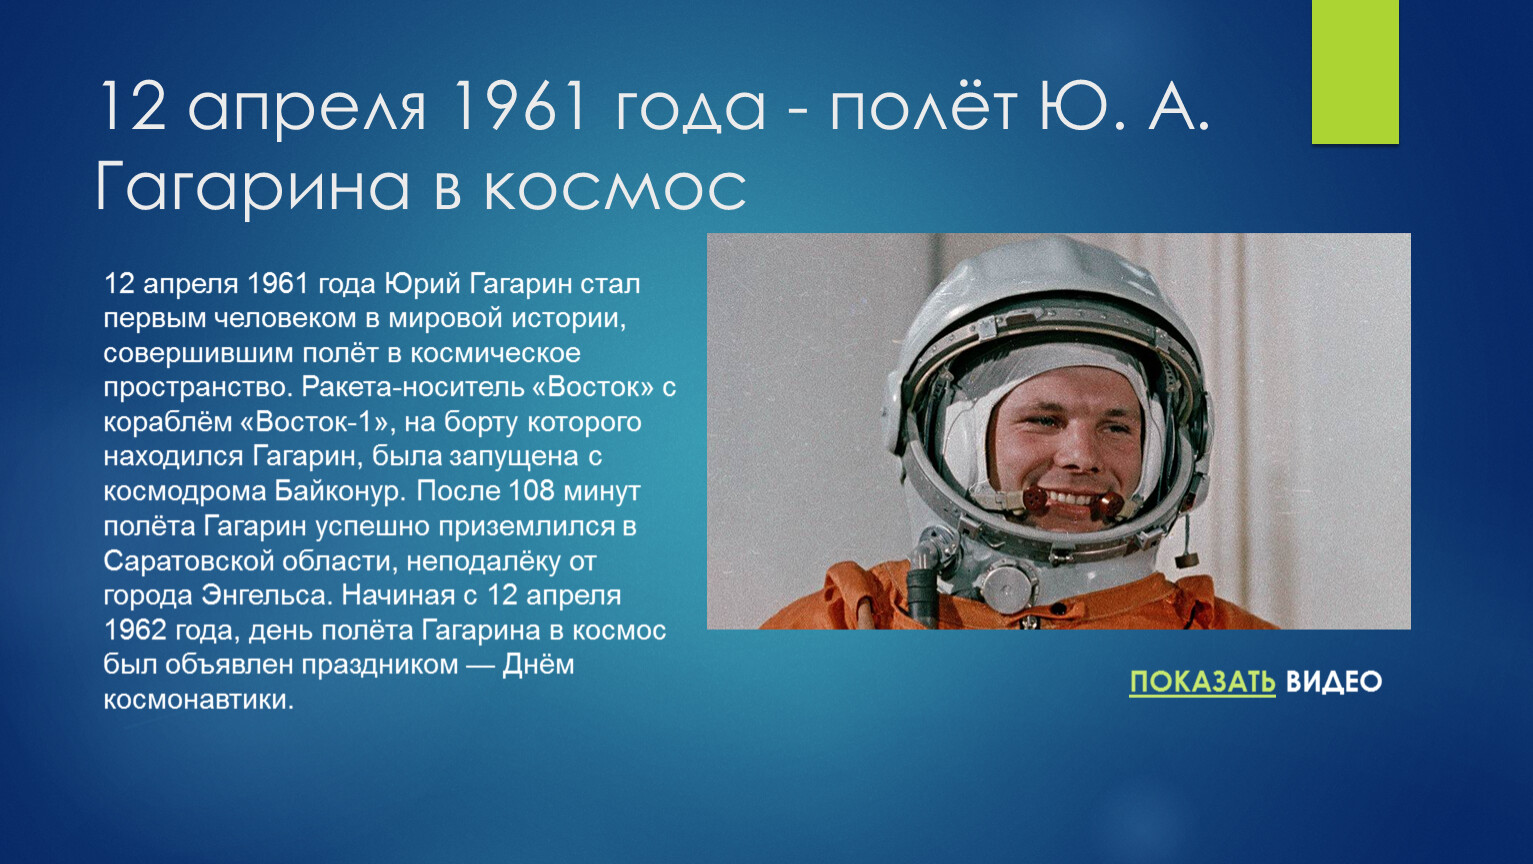 Гагарин в каком возрасте полетел в космос. Первый полет человека в космос (ю. а. Гагарин). 1961 Полет ю.а Гагарина в космос. Гагарин 12 апреля 1961 года.